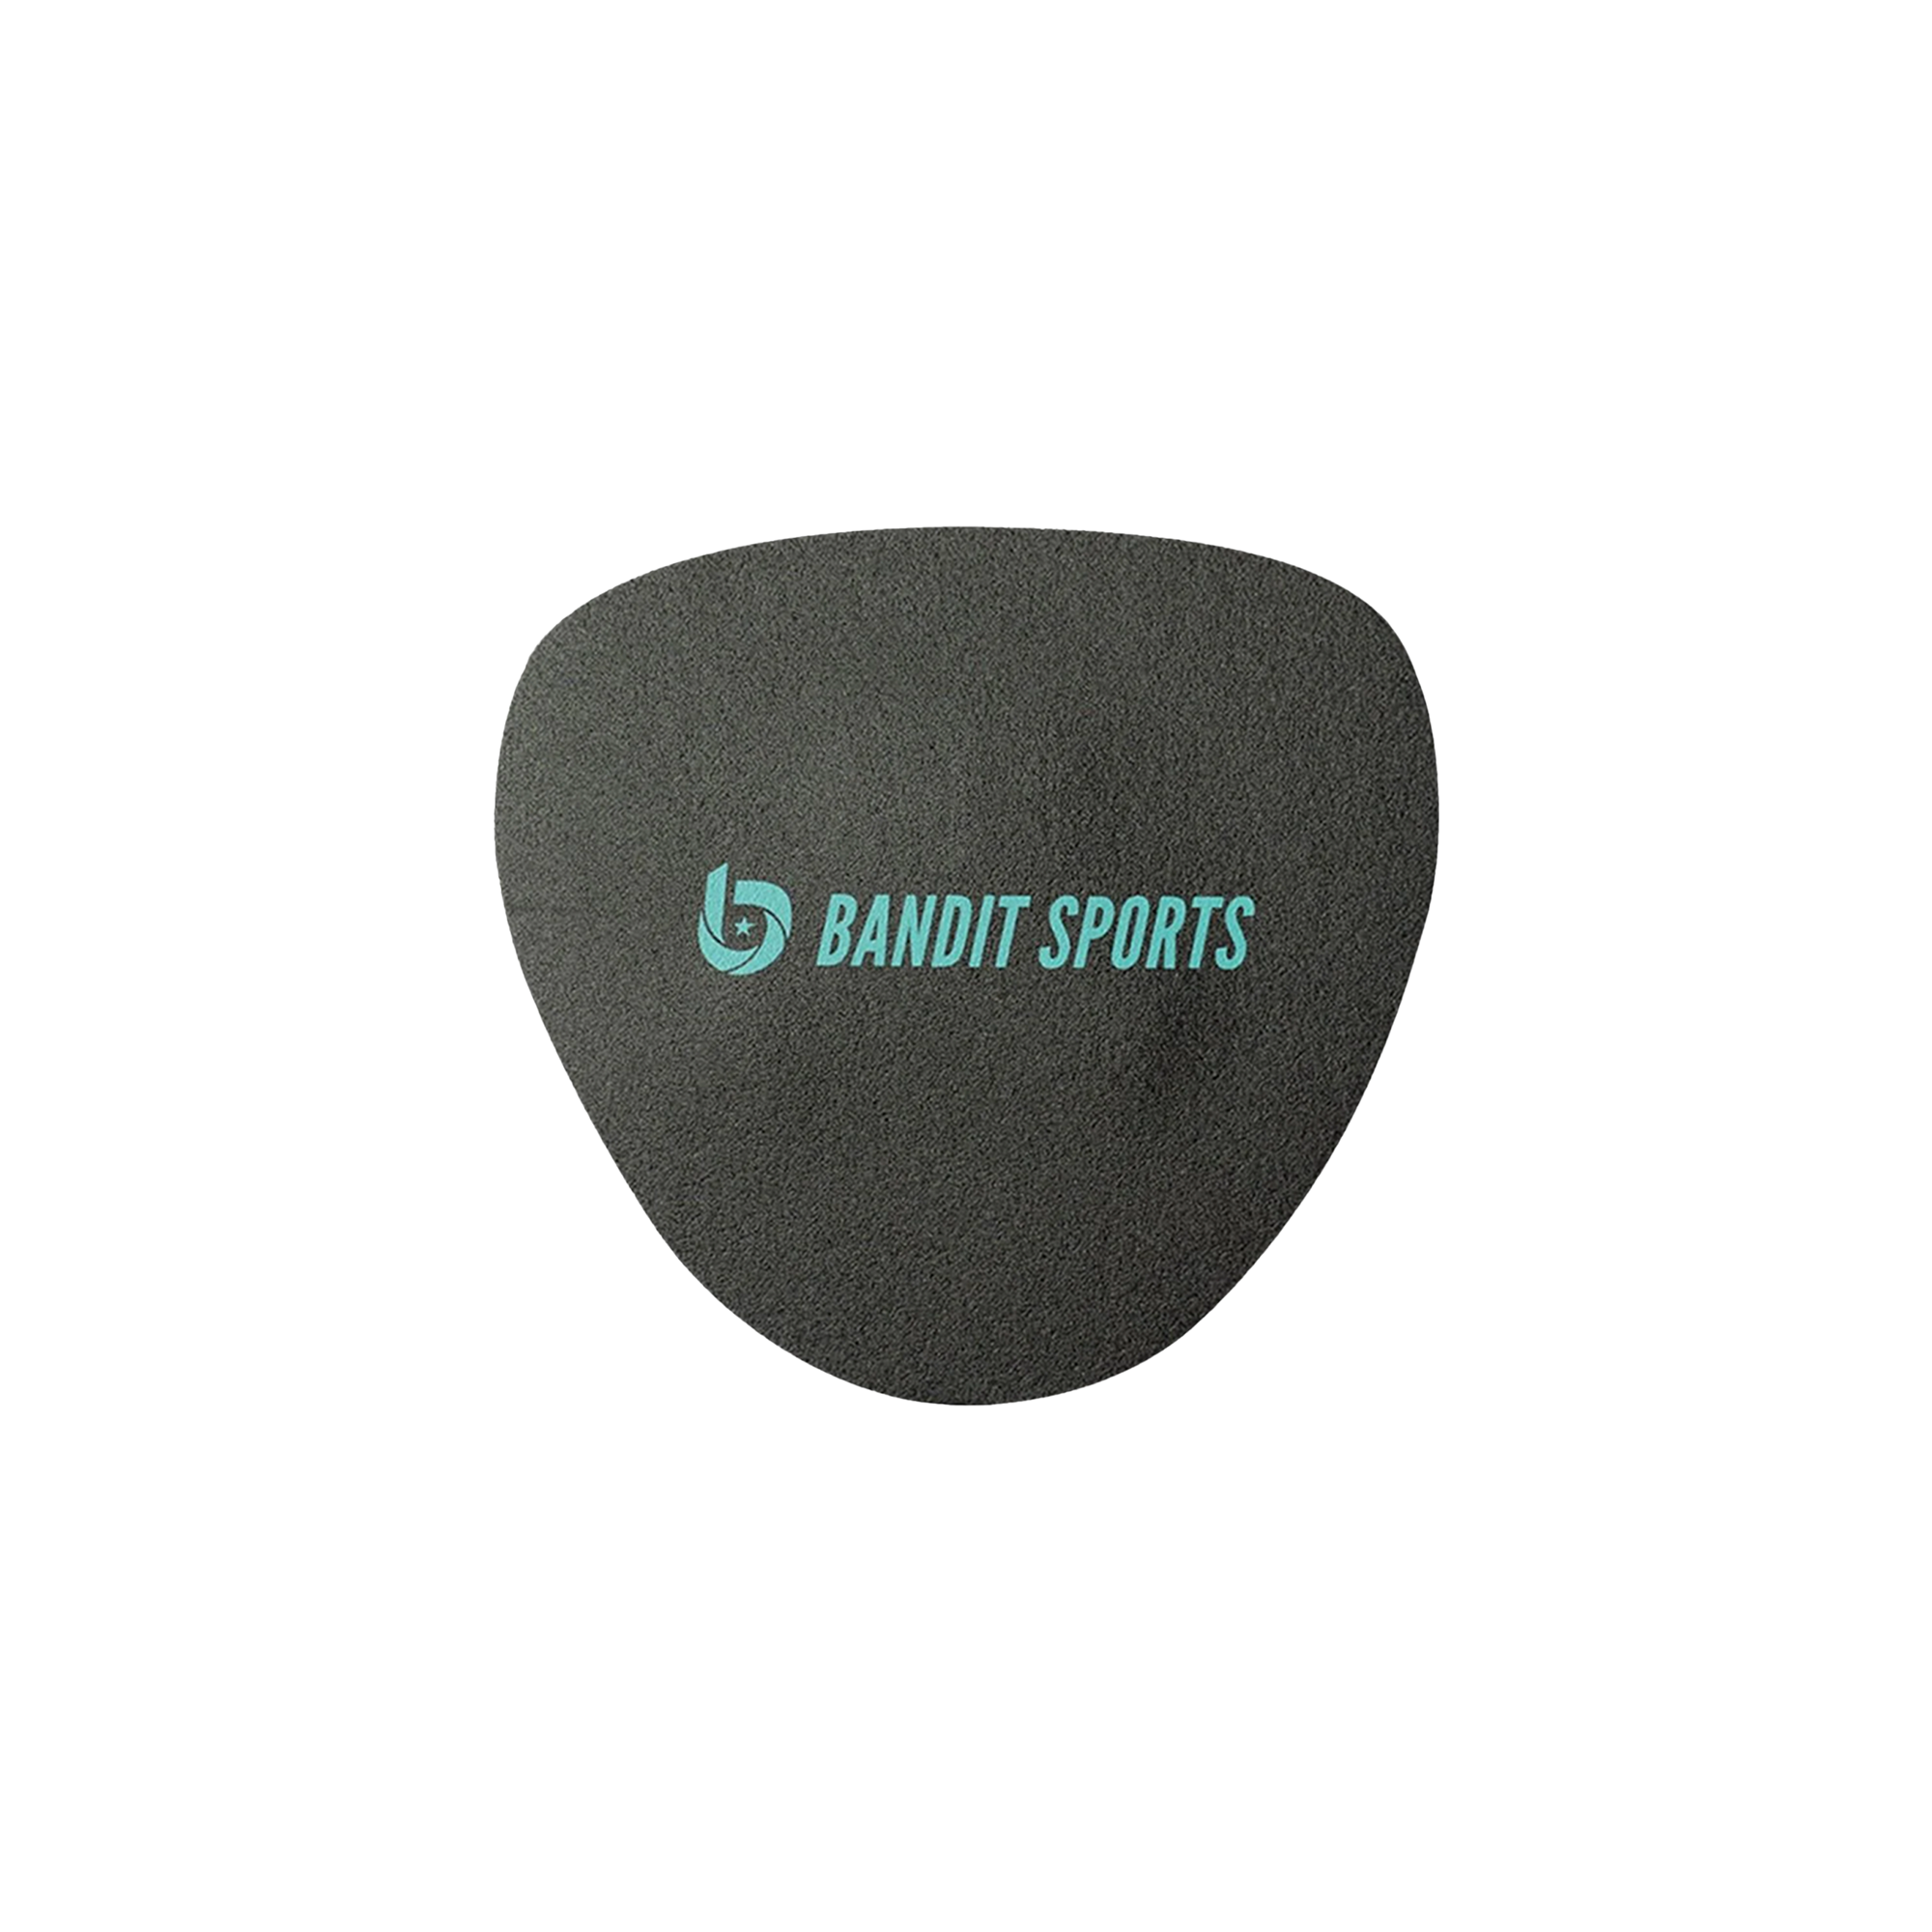 Mini soft hands, bandit sports